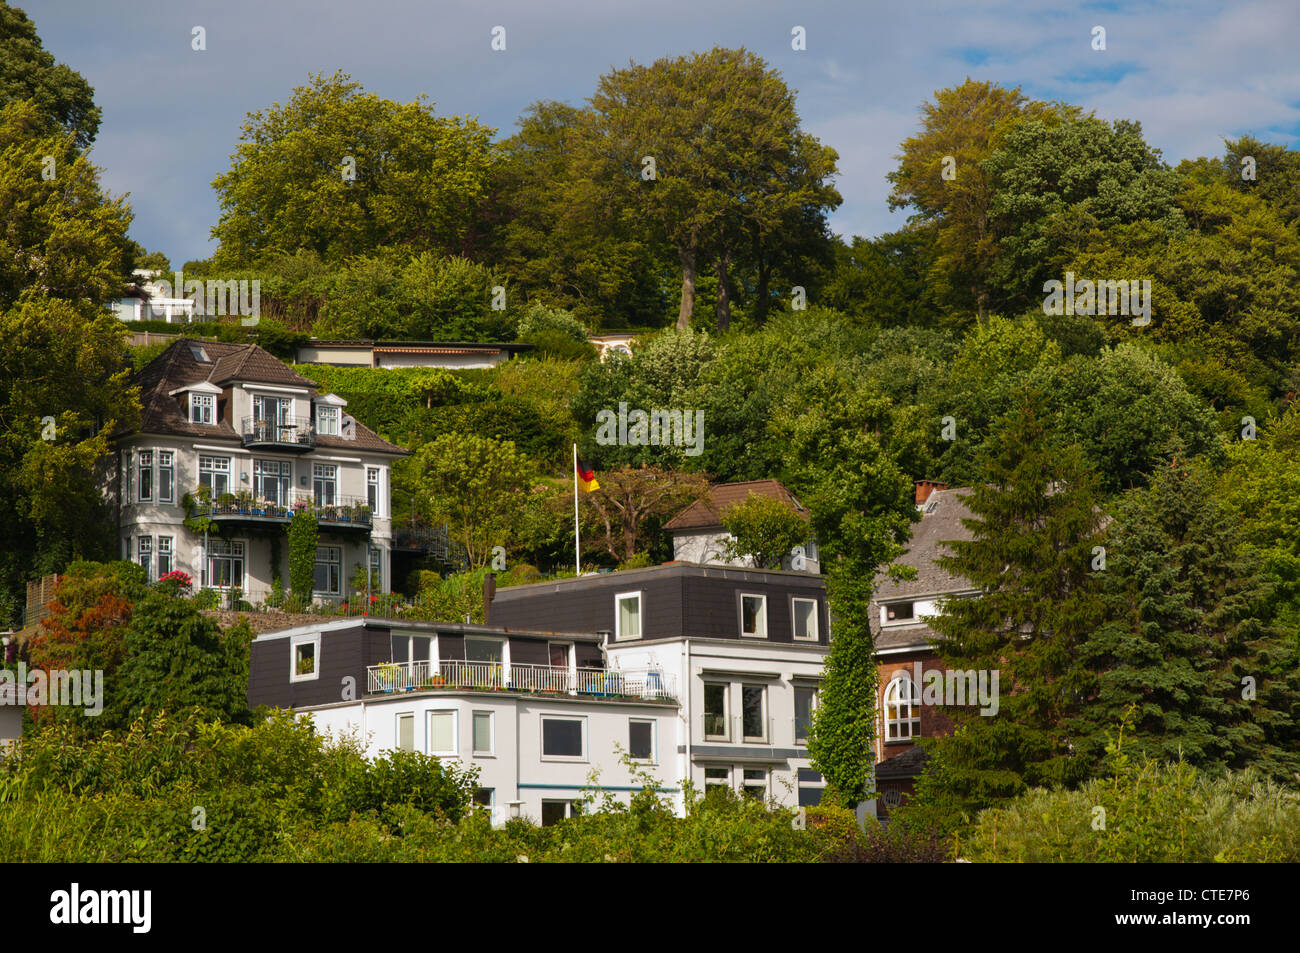 Case residenziali sulle colline quartiere Blankenese Amburgo Germania Europa Foto Stock